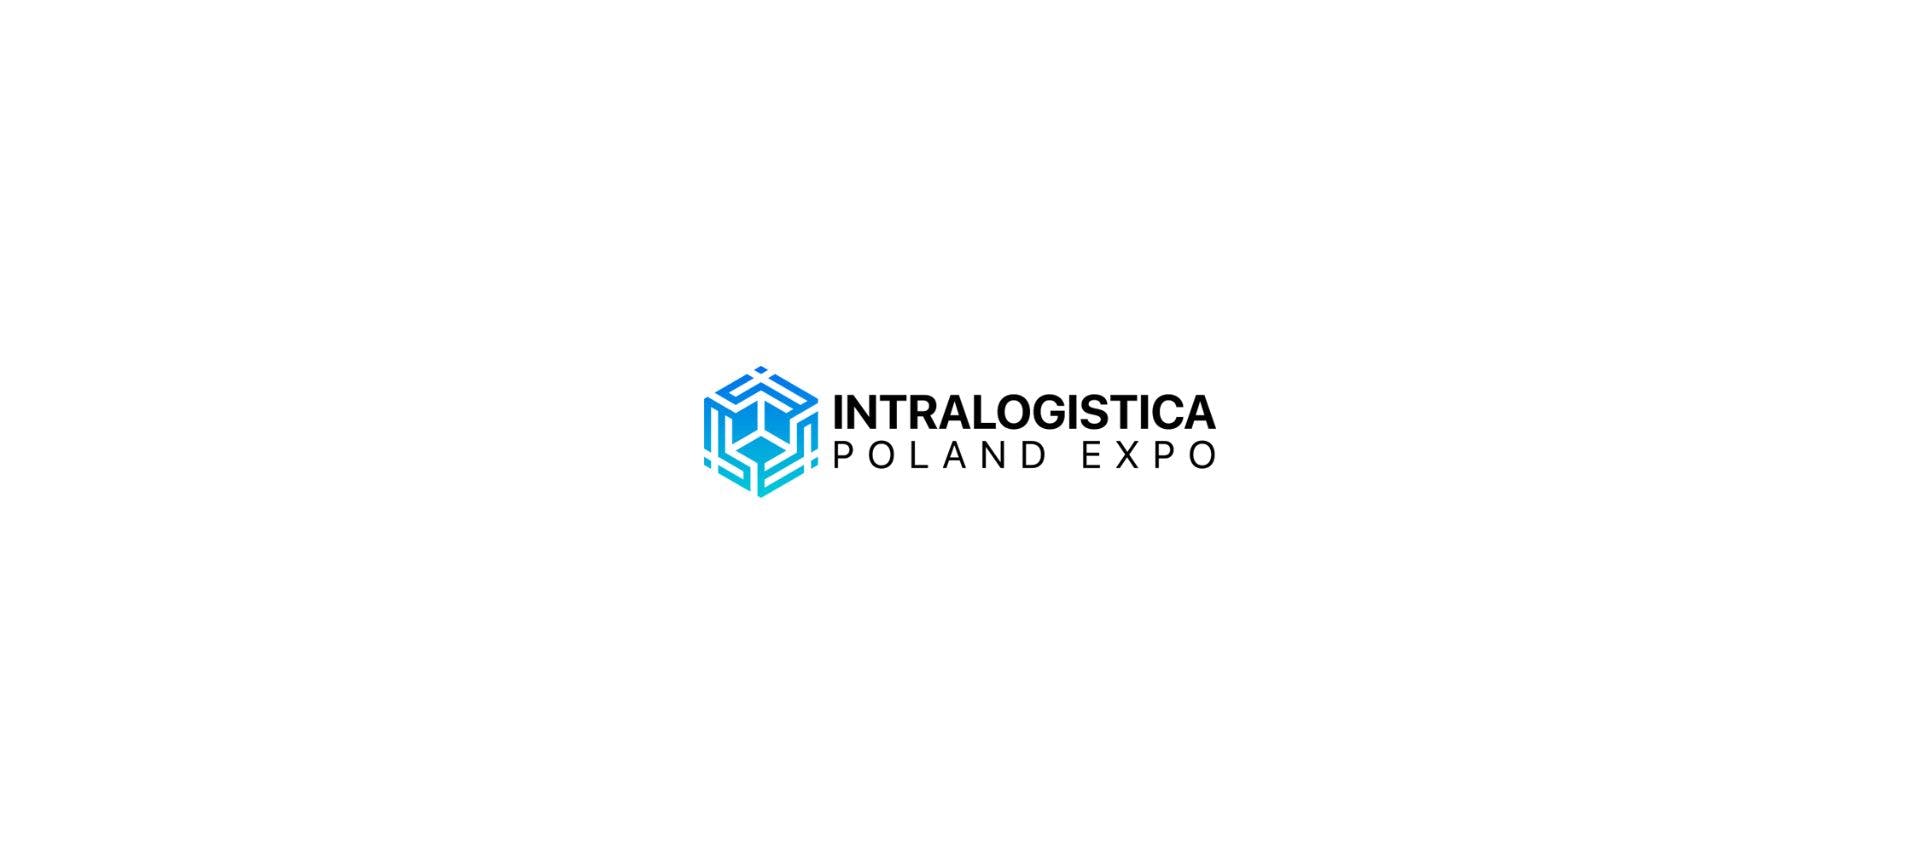 Intralogistica Poland Expo Event Logo